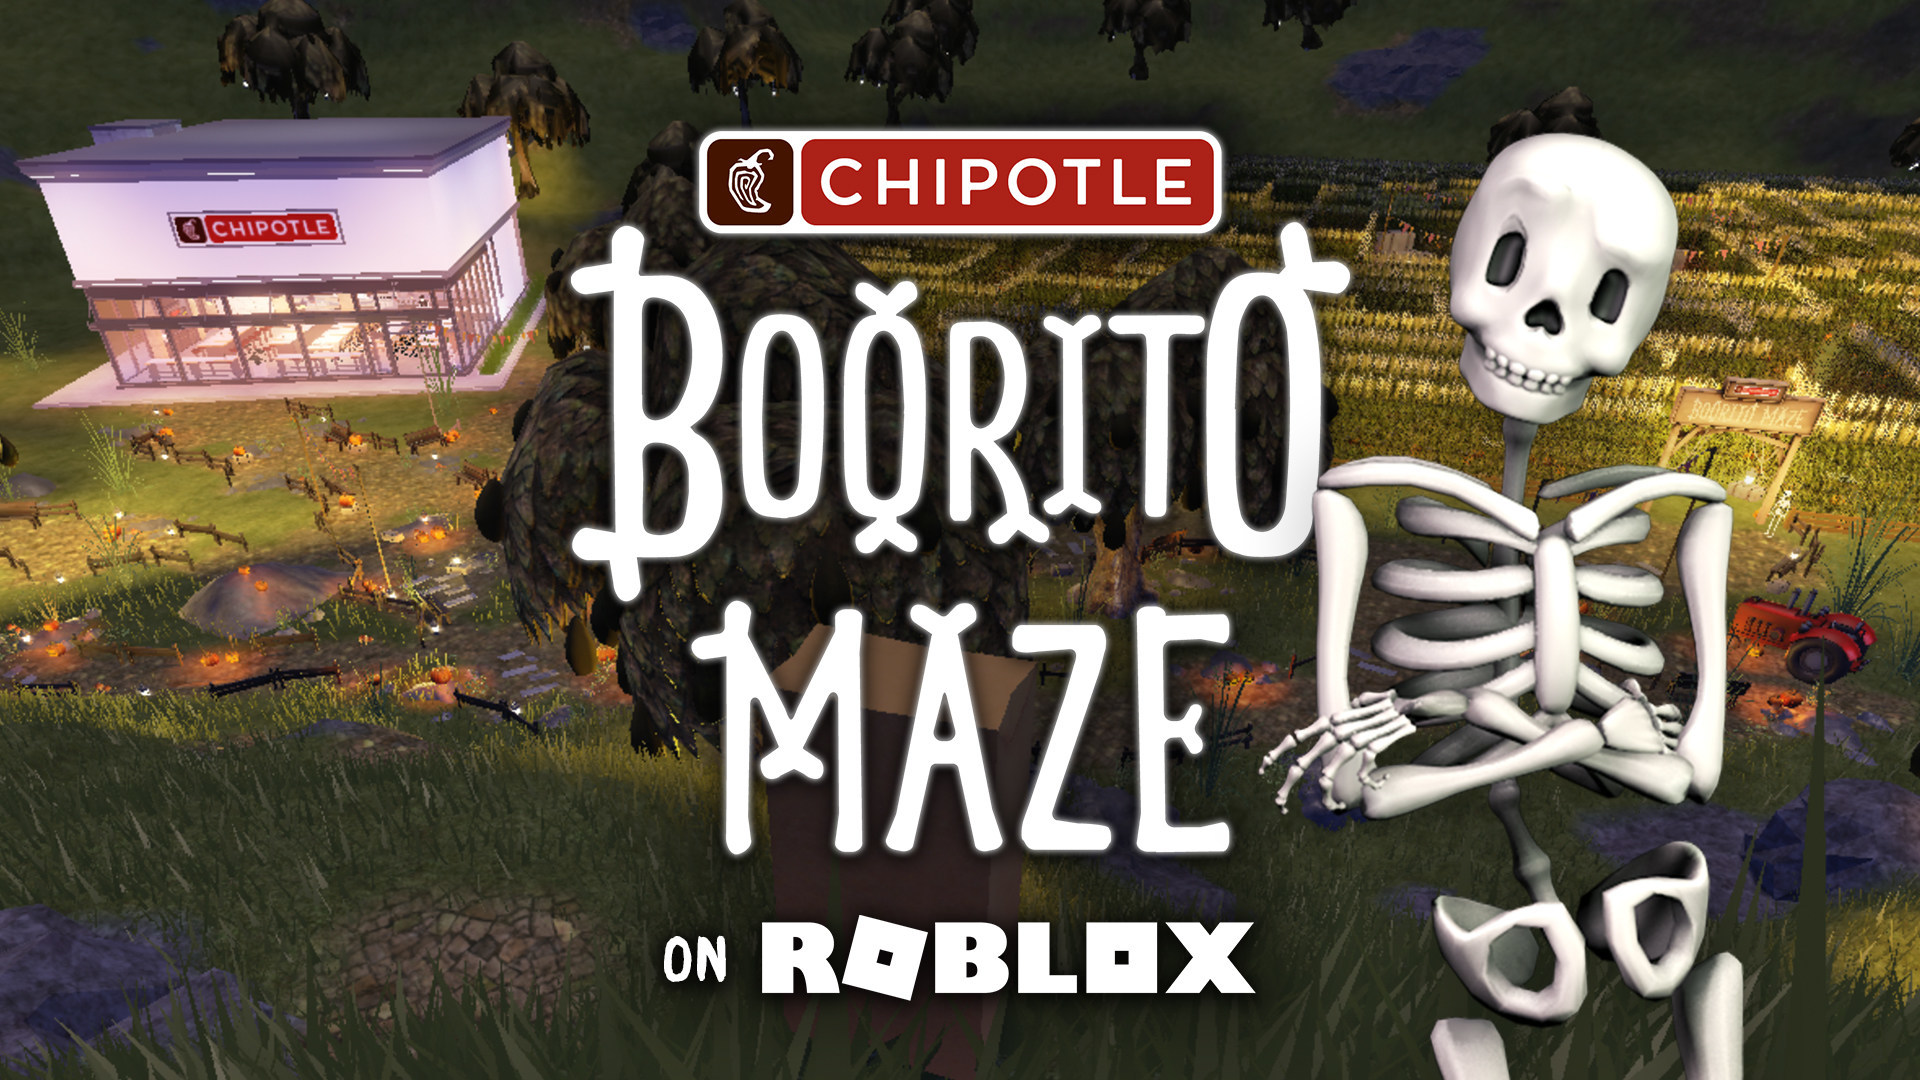 Free Chipotle Burrito for Roblox Users